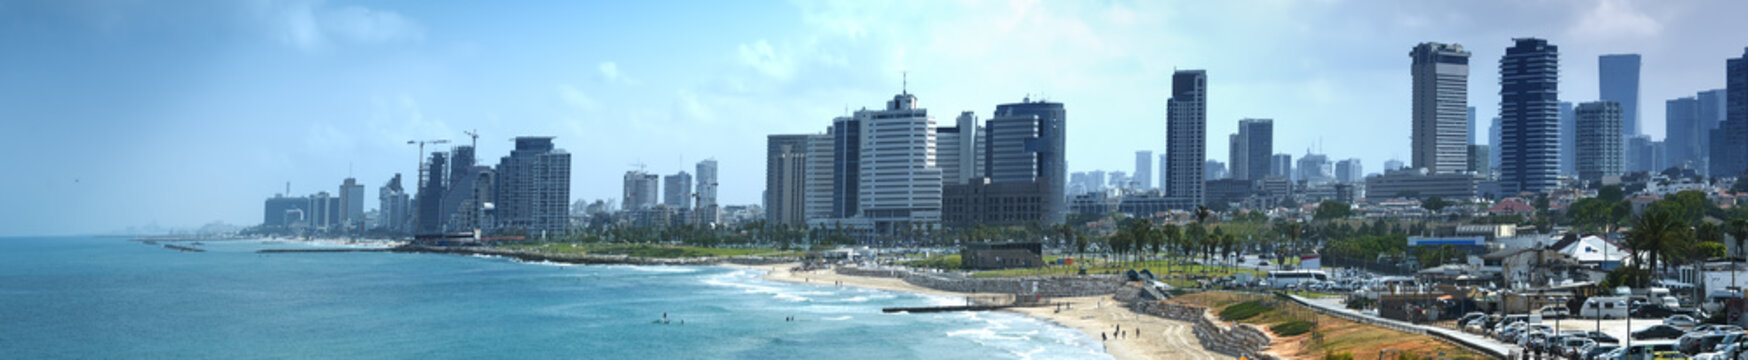 Waterfront views of Tel Aviv